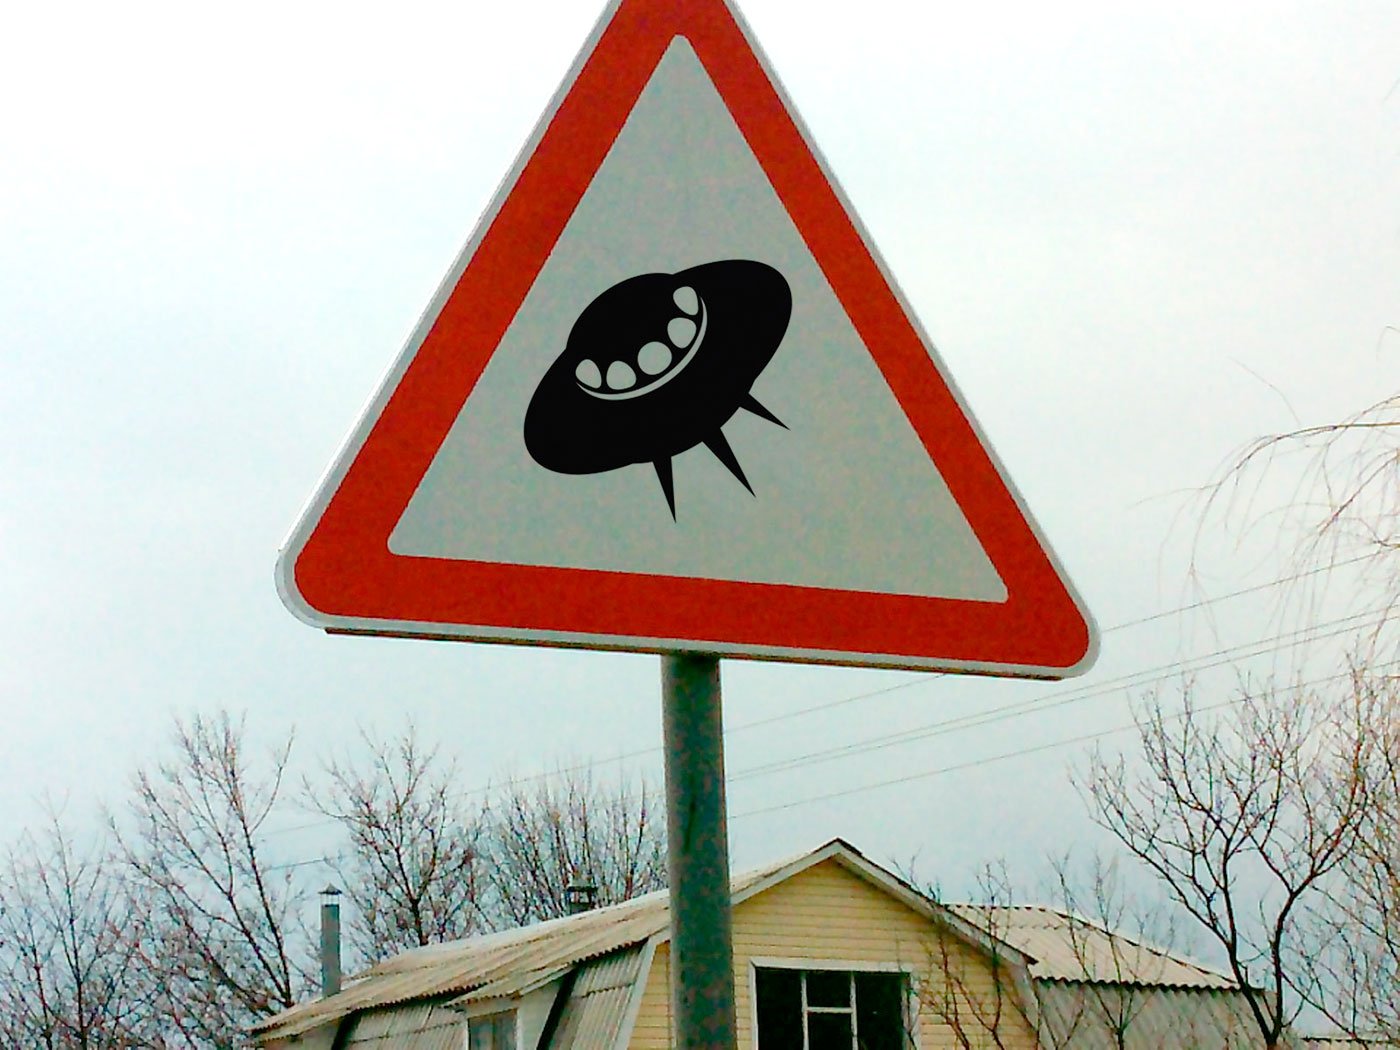 Прикольные знаки картинки. Смешные дорожные знаки. Необычные дорожные знаки. Странные знаки дорожного движения. Придумать необычный дорожный знак.